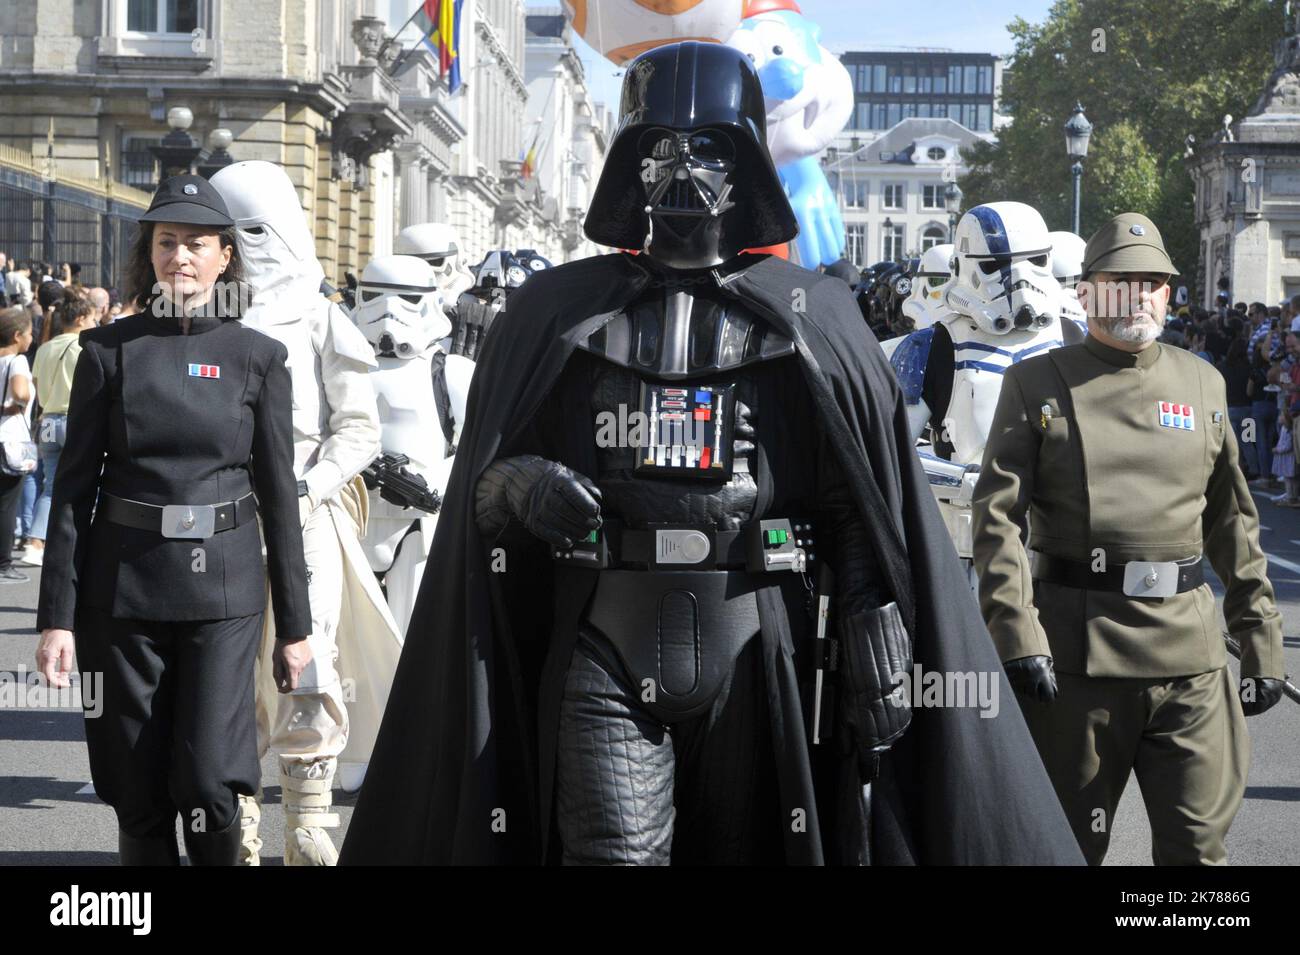 Este domingo tuvo lugar en Bruselas como parte del Festival del Cómic, un desfile de globos gigantes con la efigie de varios personajes mundialmente famosos. Una gran multitud se había movido a seguir el cortejo y también admiraba a Darth Vader y sus tropas o las diversas fanfarrias que animaron el desfile. Foto de stock